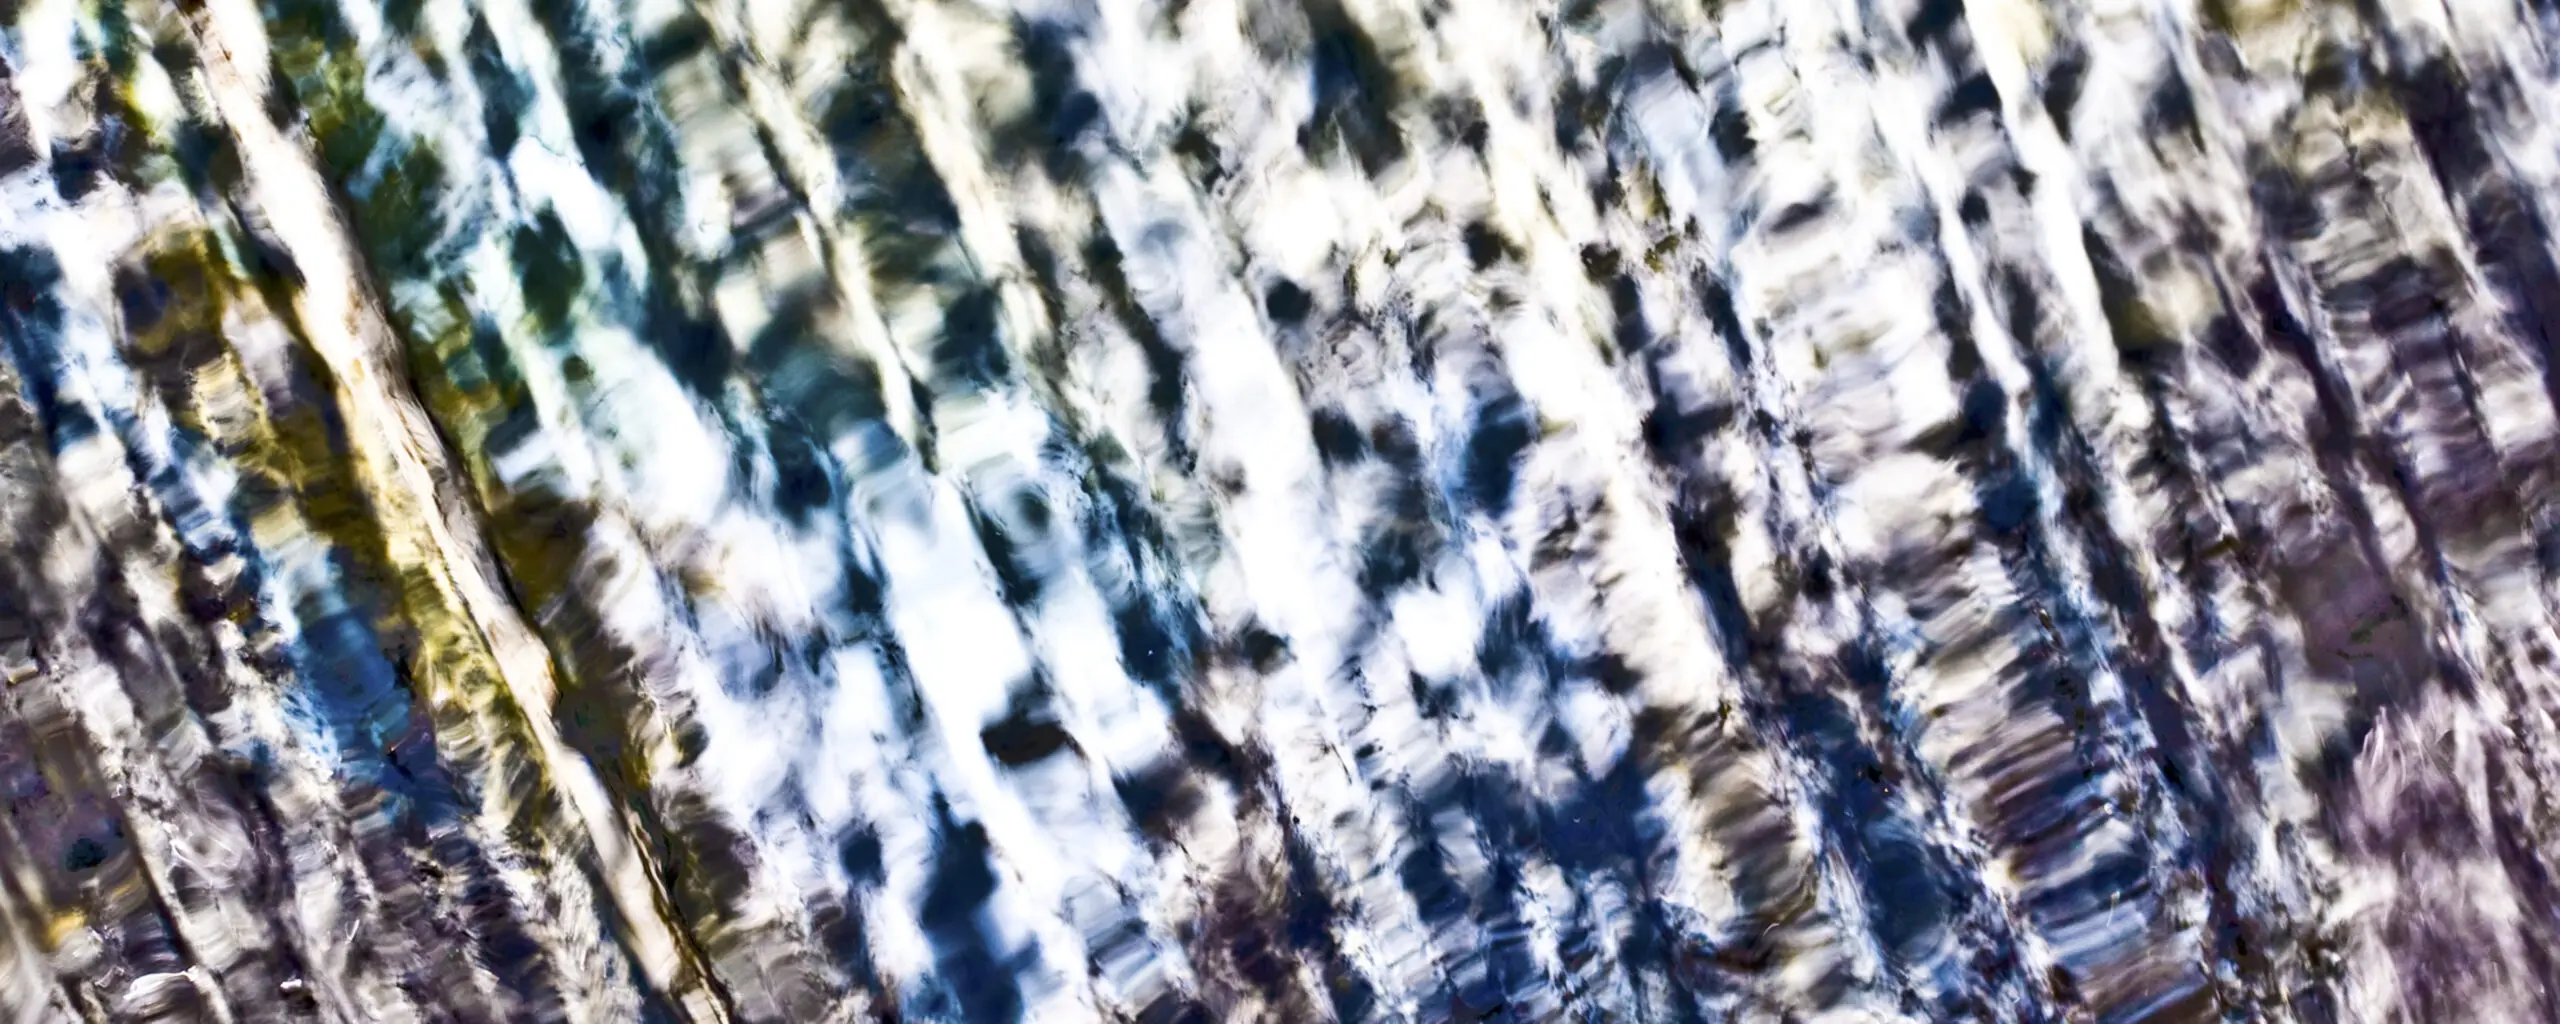 Wandbild (4121) Waves1 präsentiert: Wasser,Zen & Wellness,Abstrakt,Wassertropfen